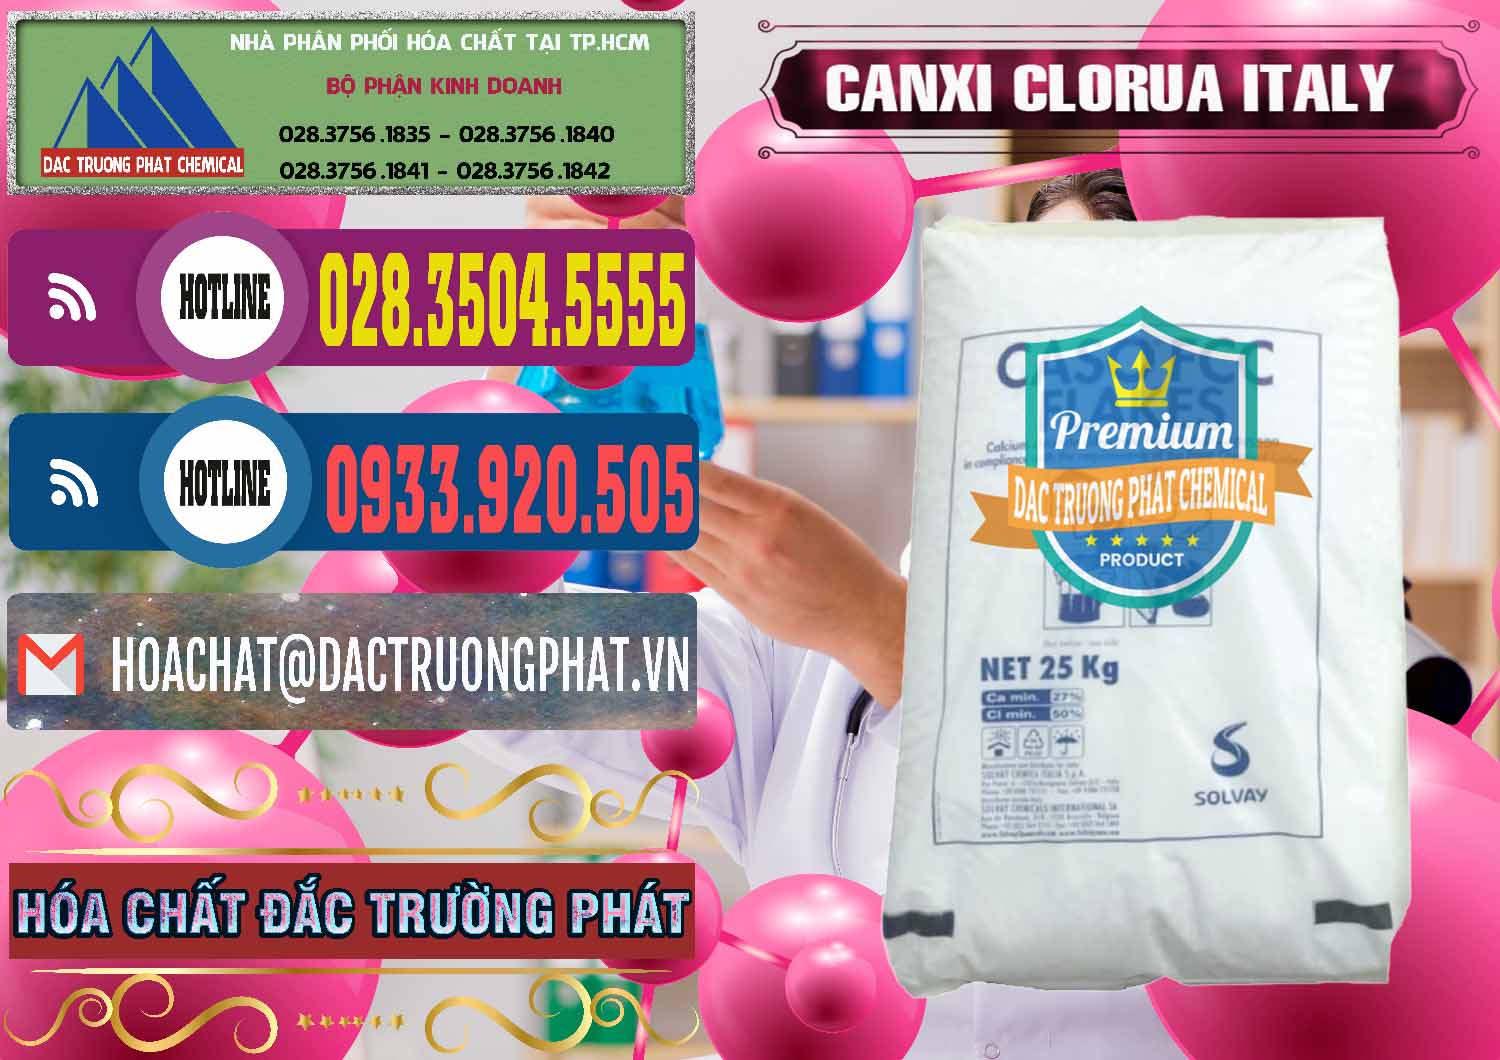 Cty bán & cung cấp CaCl2 – Canxi Clorua Food Grade Ý Italy - 0435 - Cty chuyên cung cấp _ nhập khẩu hóa chất tại TP.HCM - muabanhoachat.com.vn